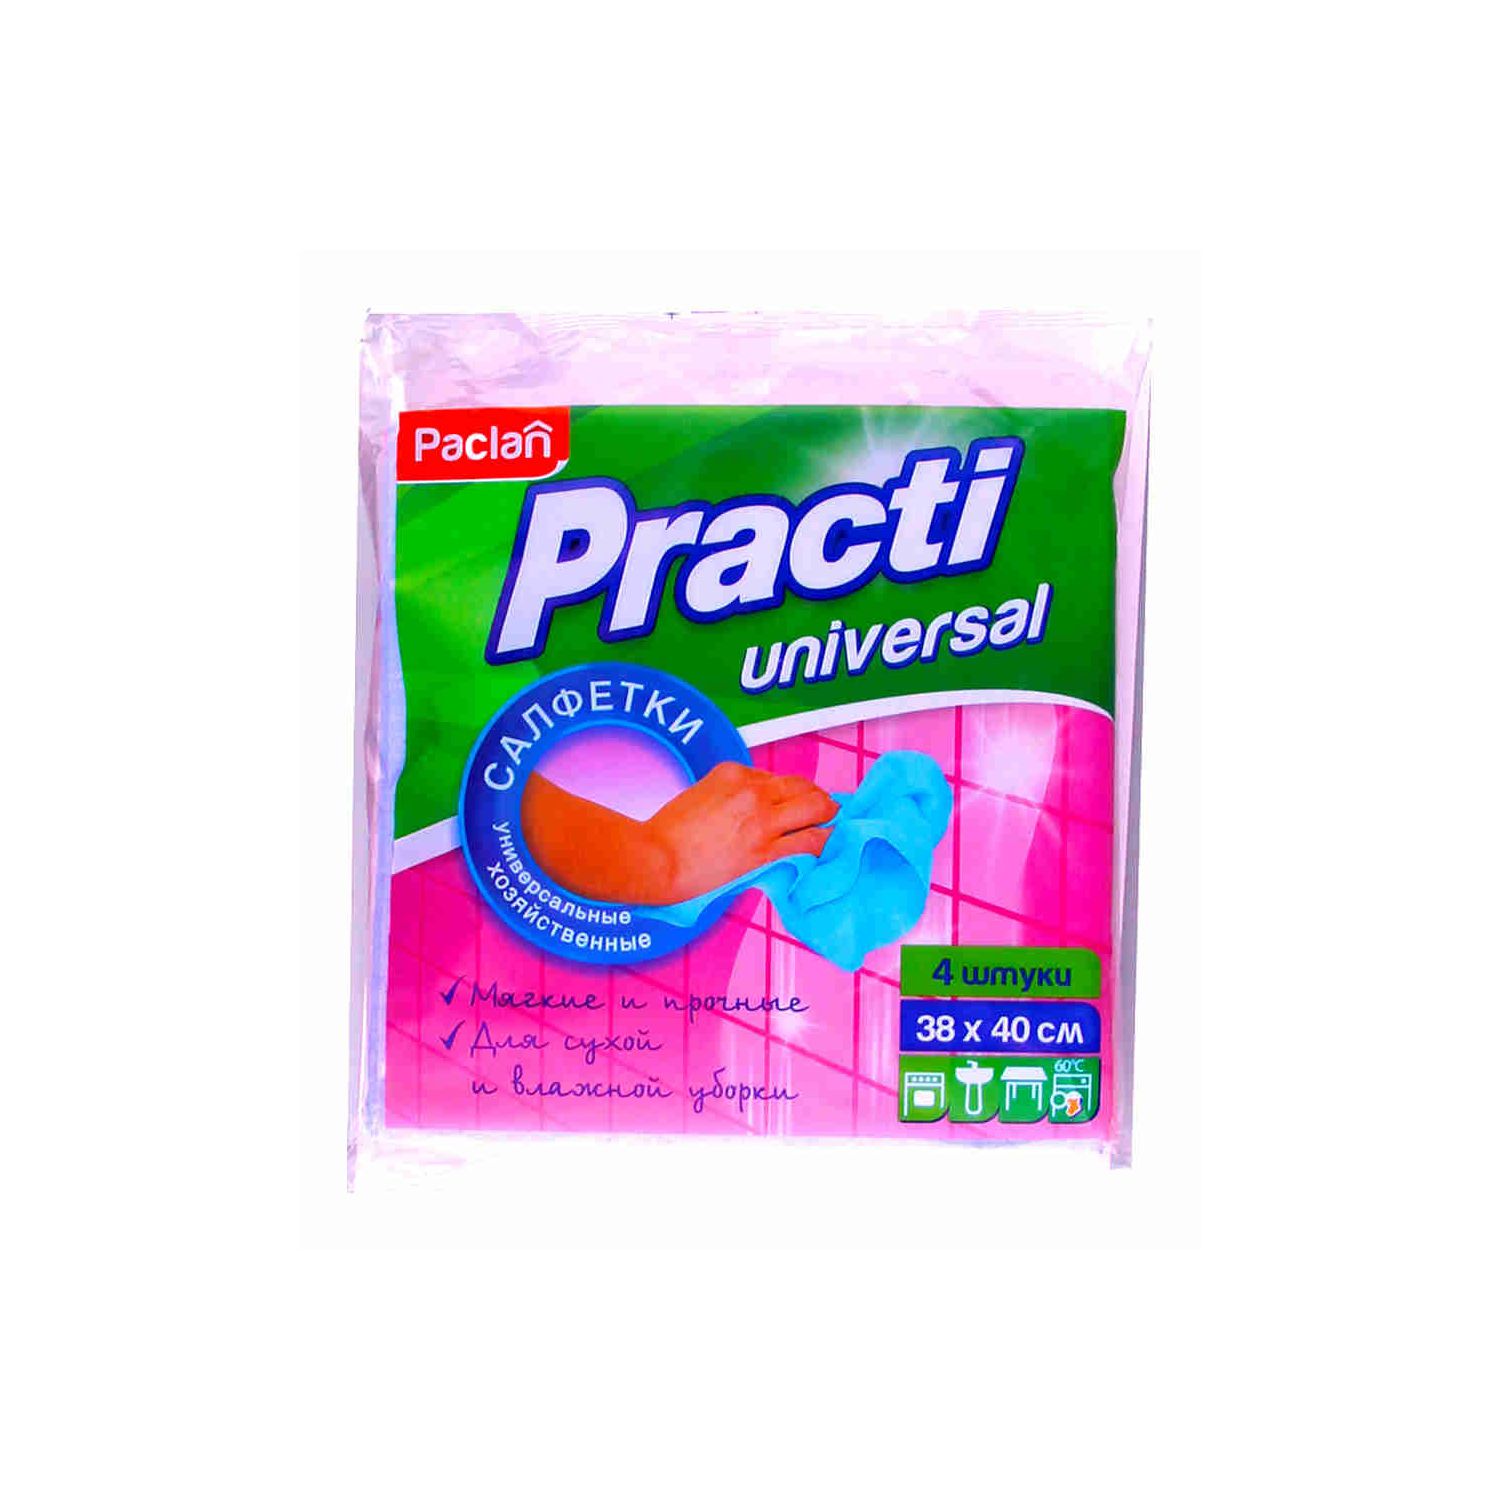 Набор универсальных салфеток для уборки Paclan Pract 4 шт